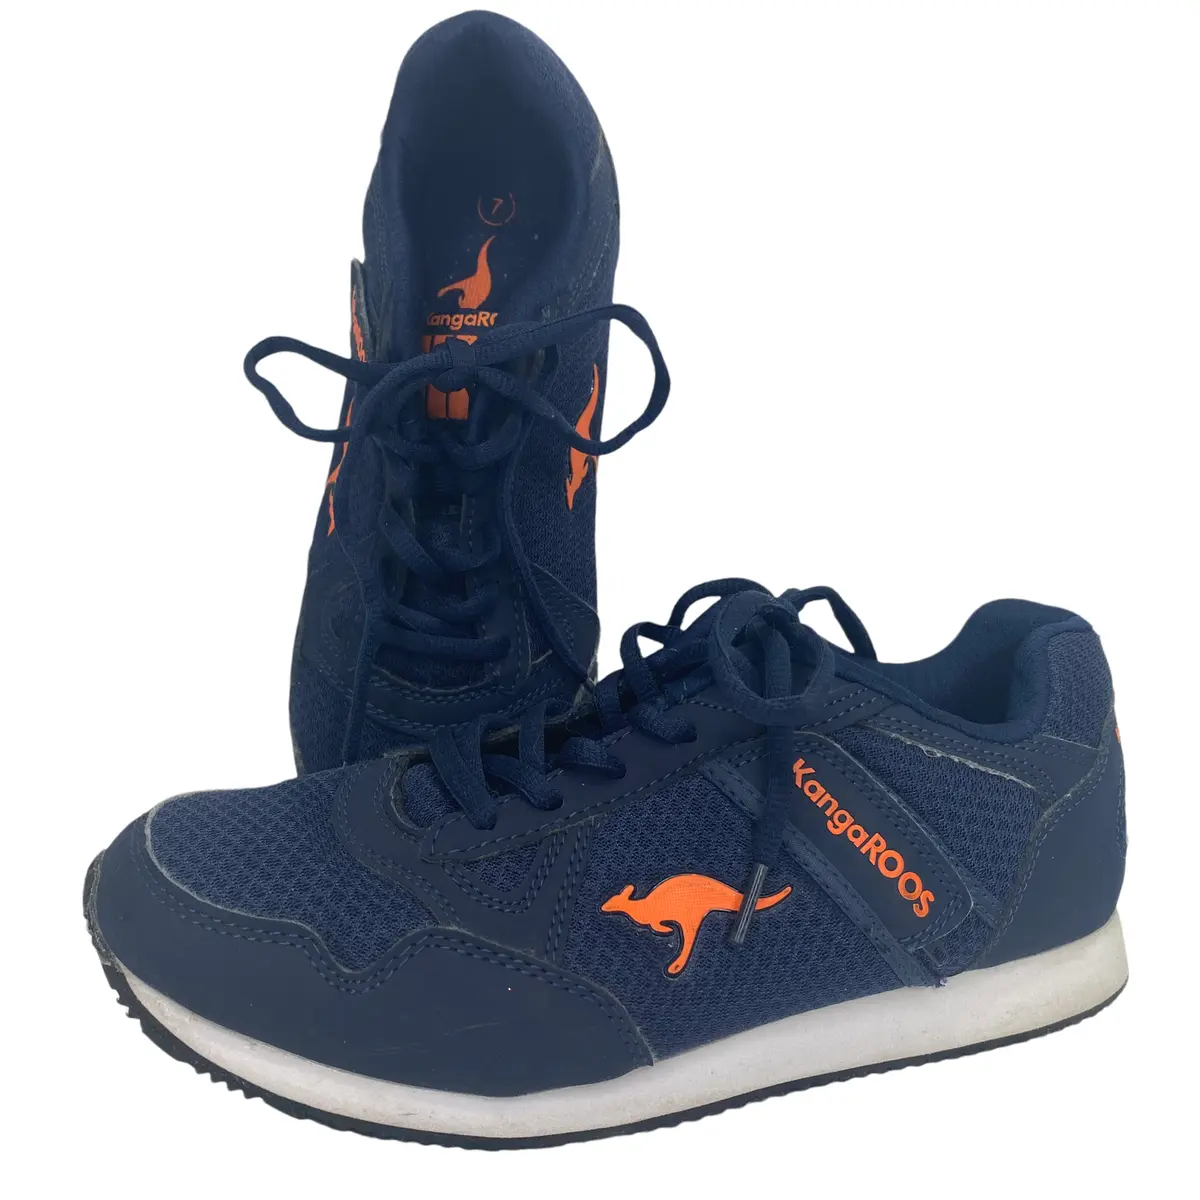 Womens KangaROOS Sneakers Walking Running Navy Blue Orange Shoes Size 7 |  eBay